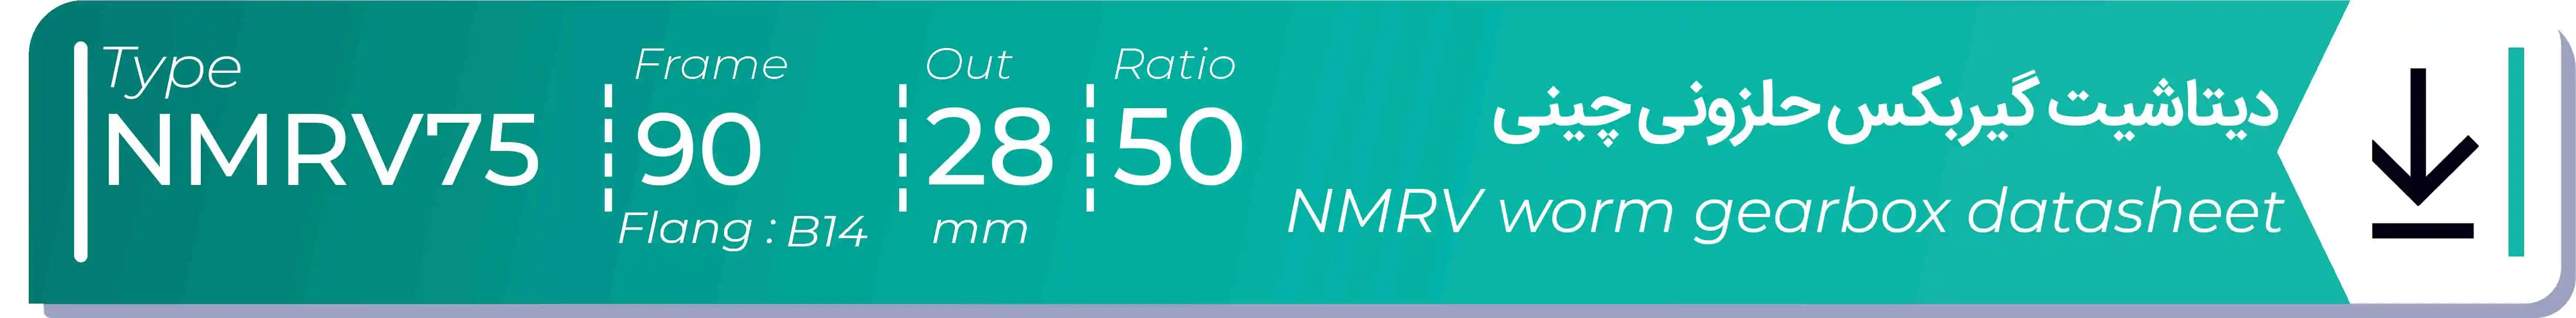  دیتاشیت و مشخصات فنی گیربکس حلزونی چینی   NMRV75  -  با خروجی 28- میلی متر و نسبت50 و فریم 90